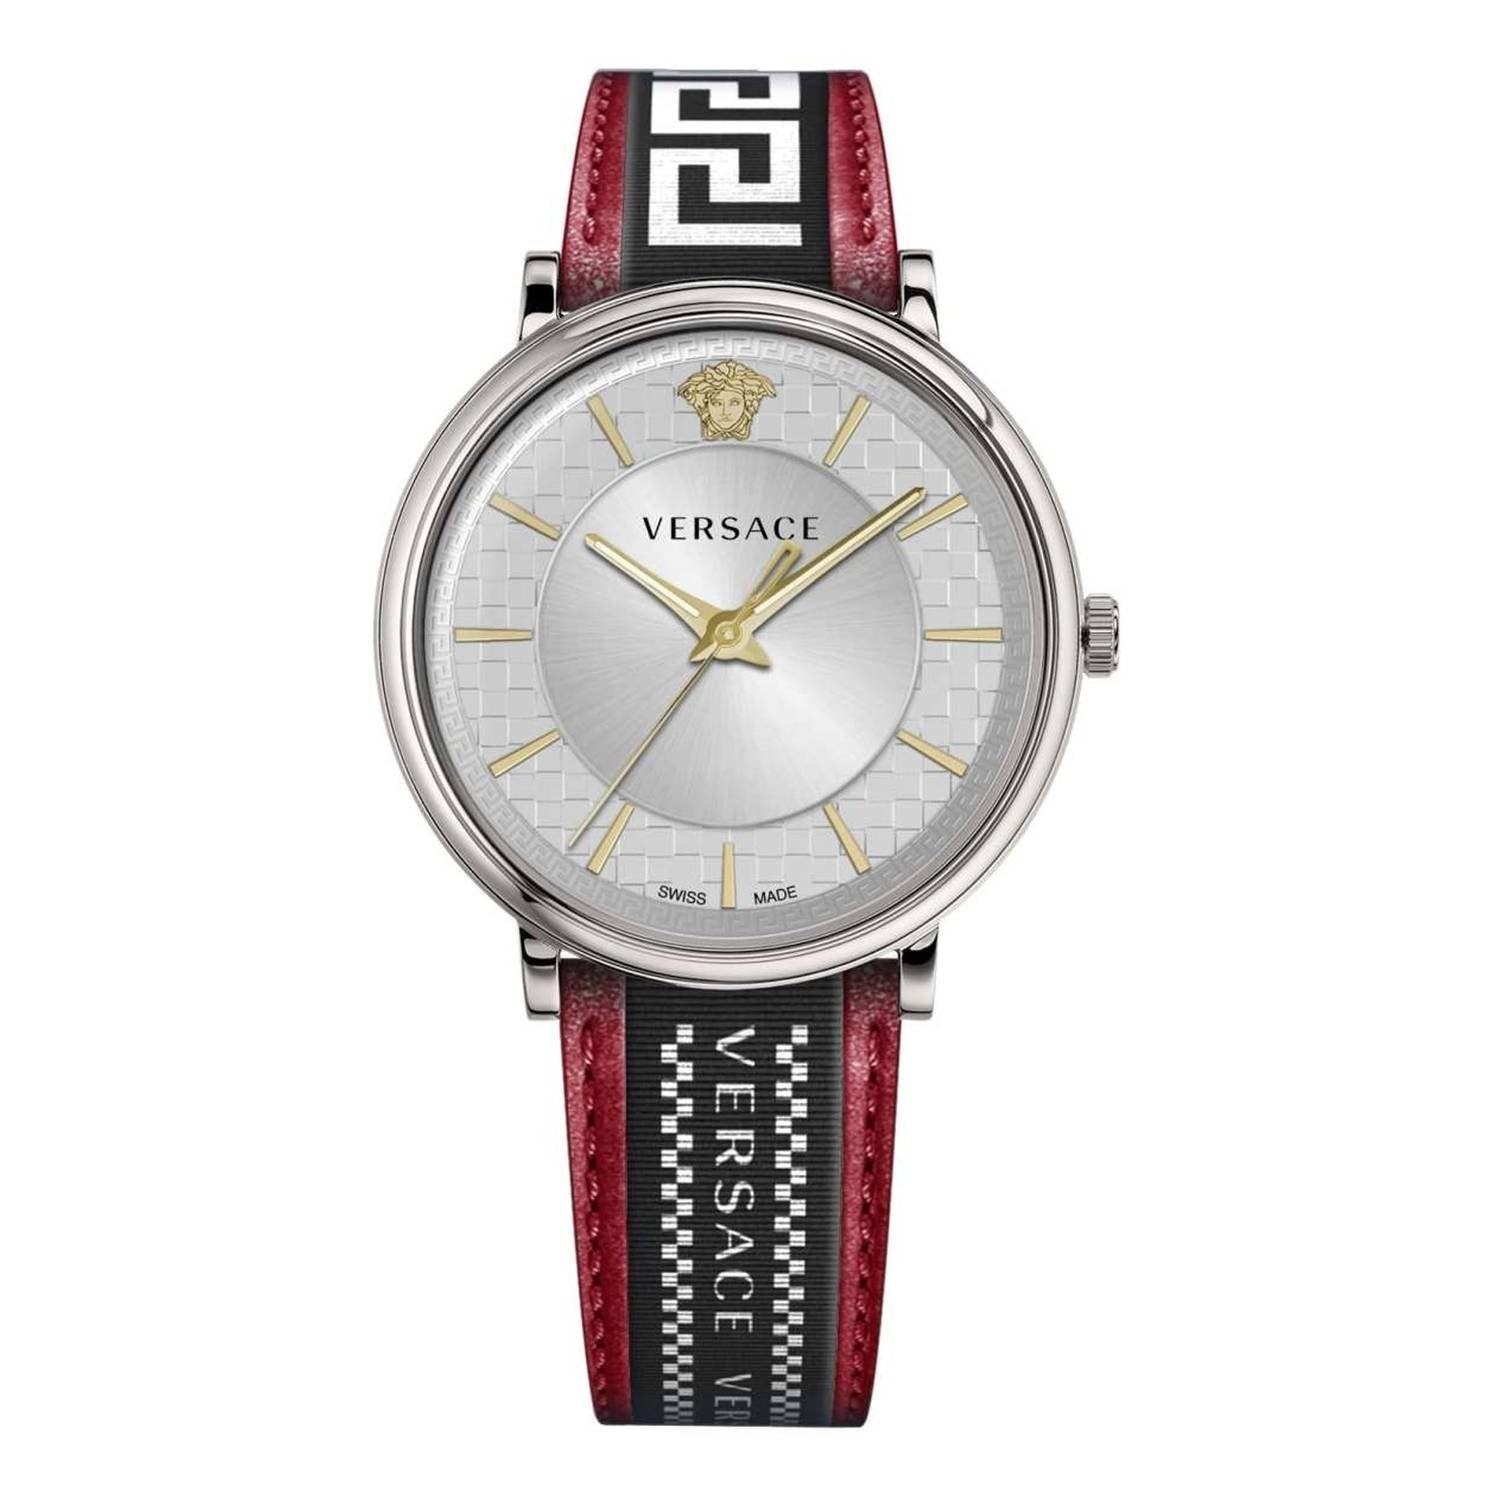 Versace Schweizer Uhr VE5A014 21